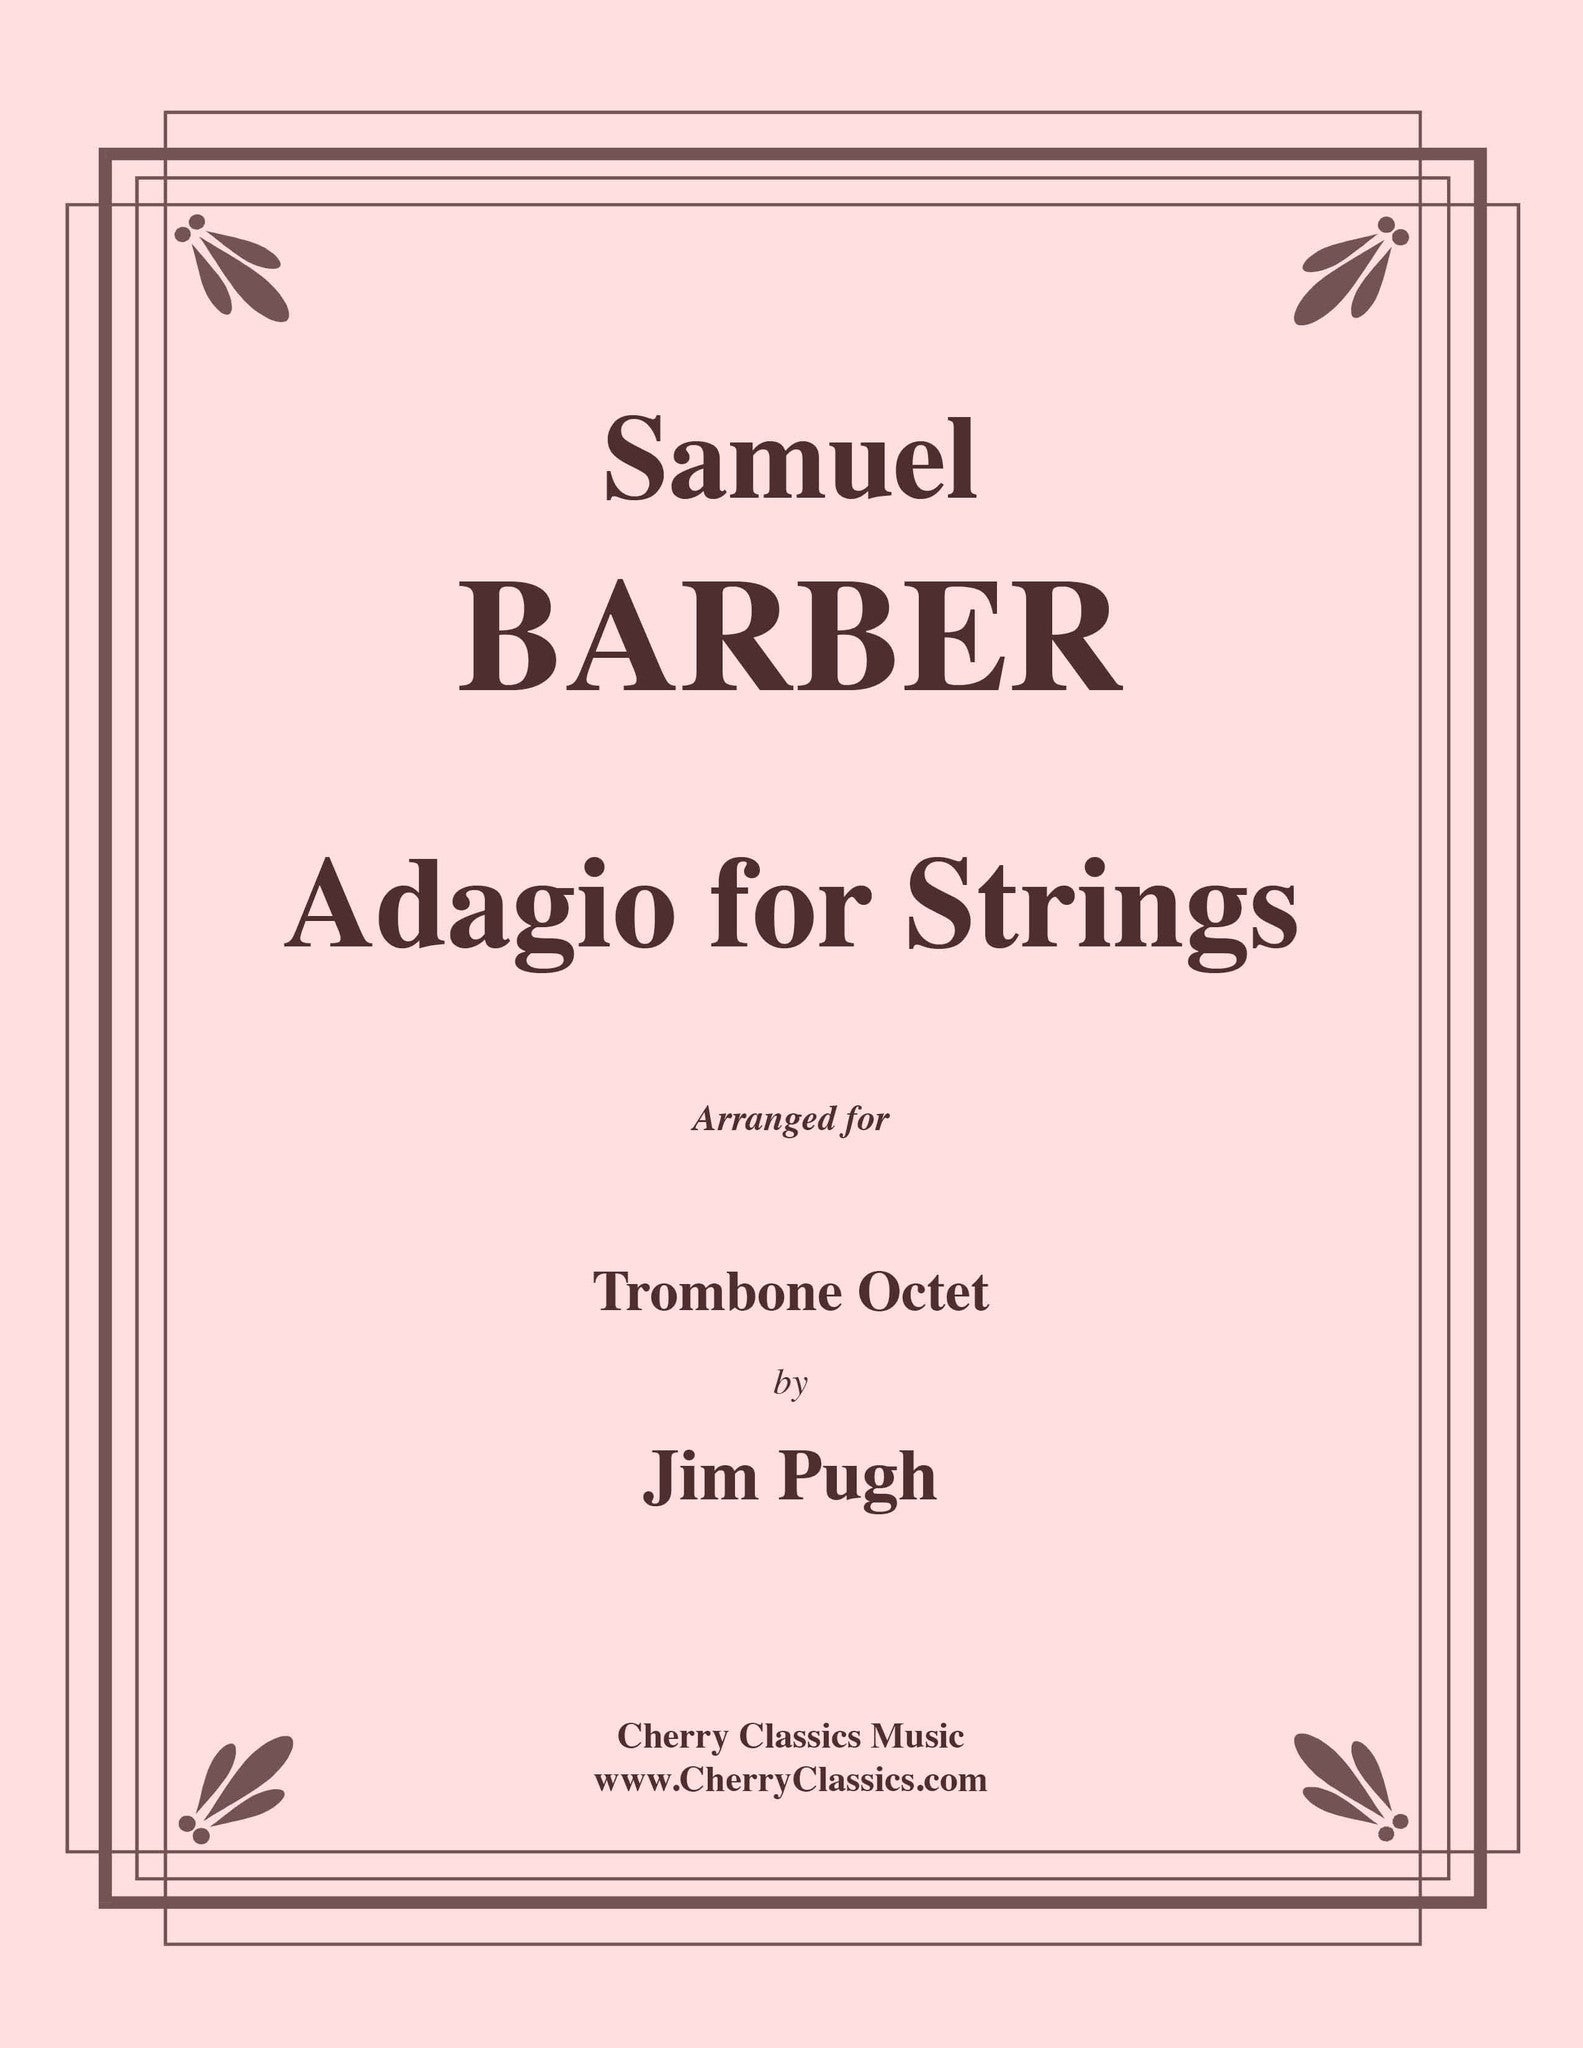 Барбер Адажио для струнных Ноты. Adagio for Strings, op. 11 Samuel Barber. Адажио тромбон. Сэмюэл барбер Адажио для струнных 1936 Ноты. Barber adagio